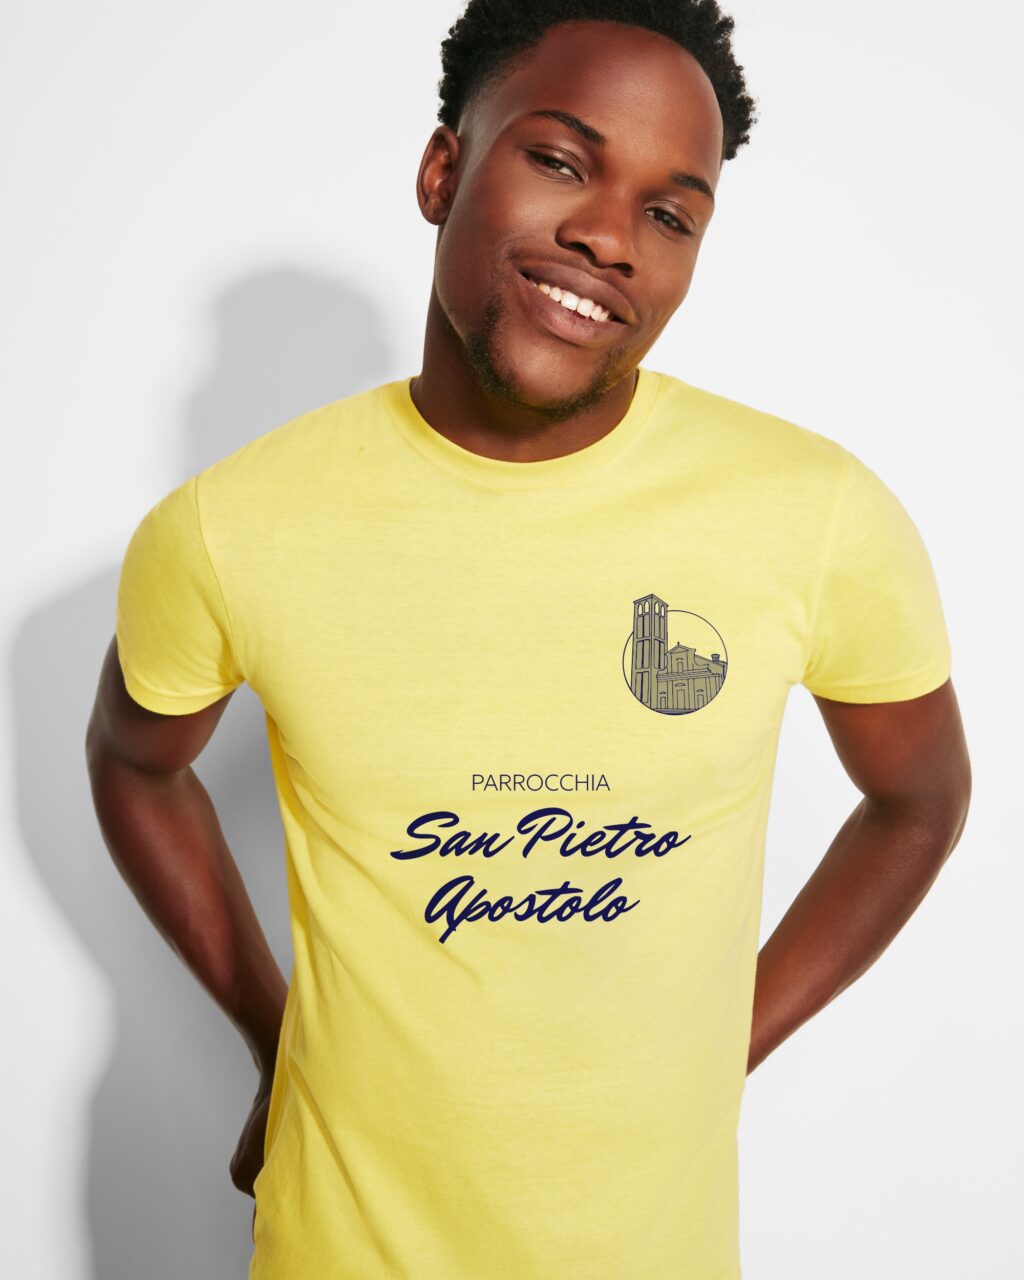 Ragazzo che indossa una maglietta giallo canarino con stampata la scritta Parrocchia San Pietro Apostolo